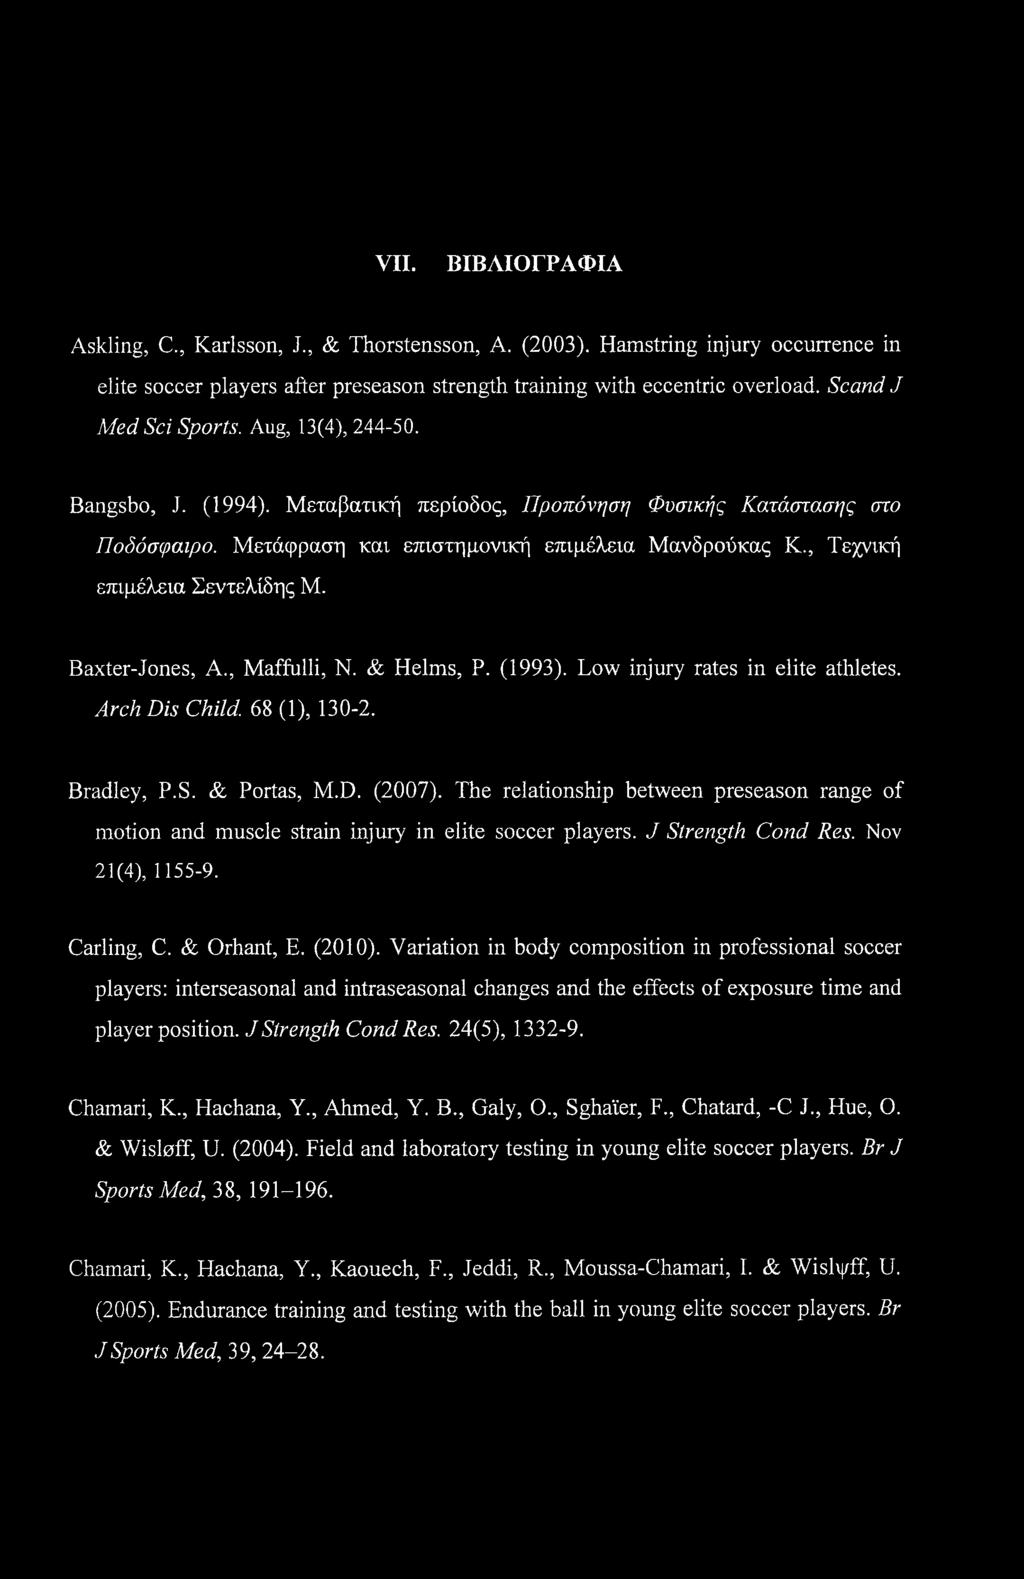 , Τεχνική επιμέλεια Σεντελίδης Μ. Baxter-Jones, A., Maffulli, Ν. & Helms, Ρ. (1993). Low injury rates in elite athletes. Arch Dis Child. 68 (1), 130-2. Bradley, P.S. & Portas, M.D. (2007).